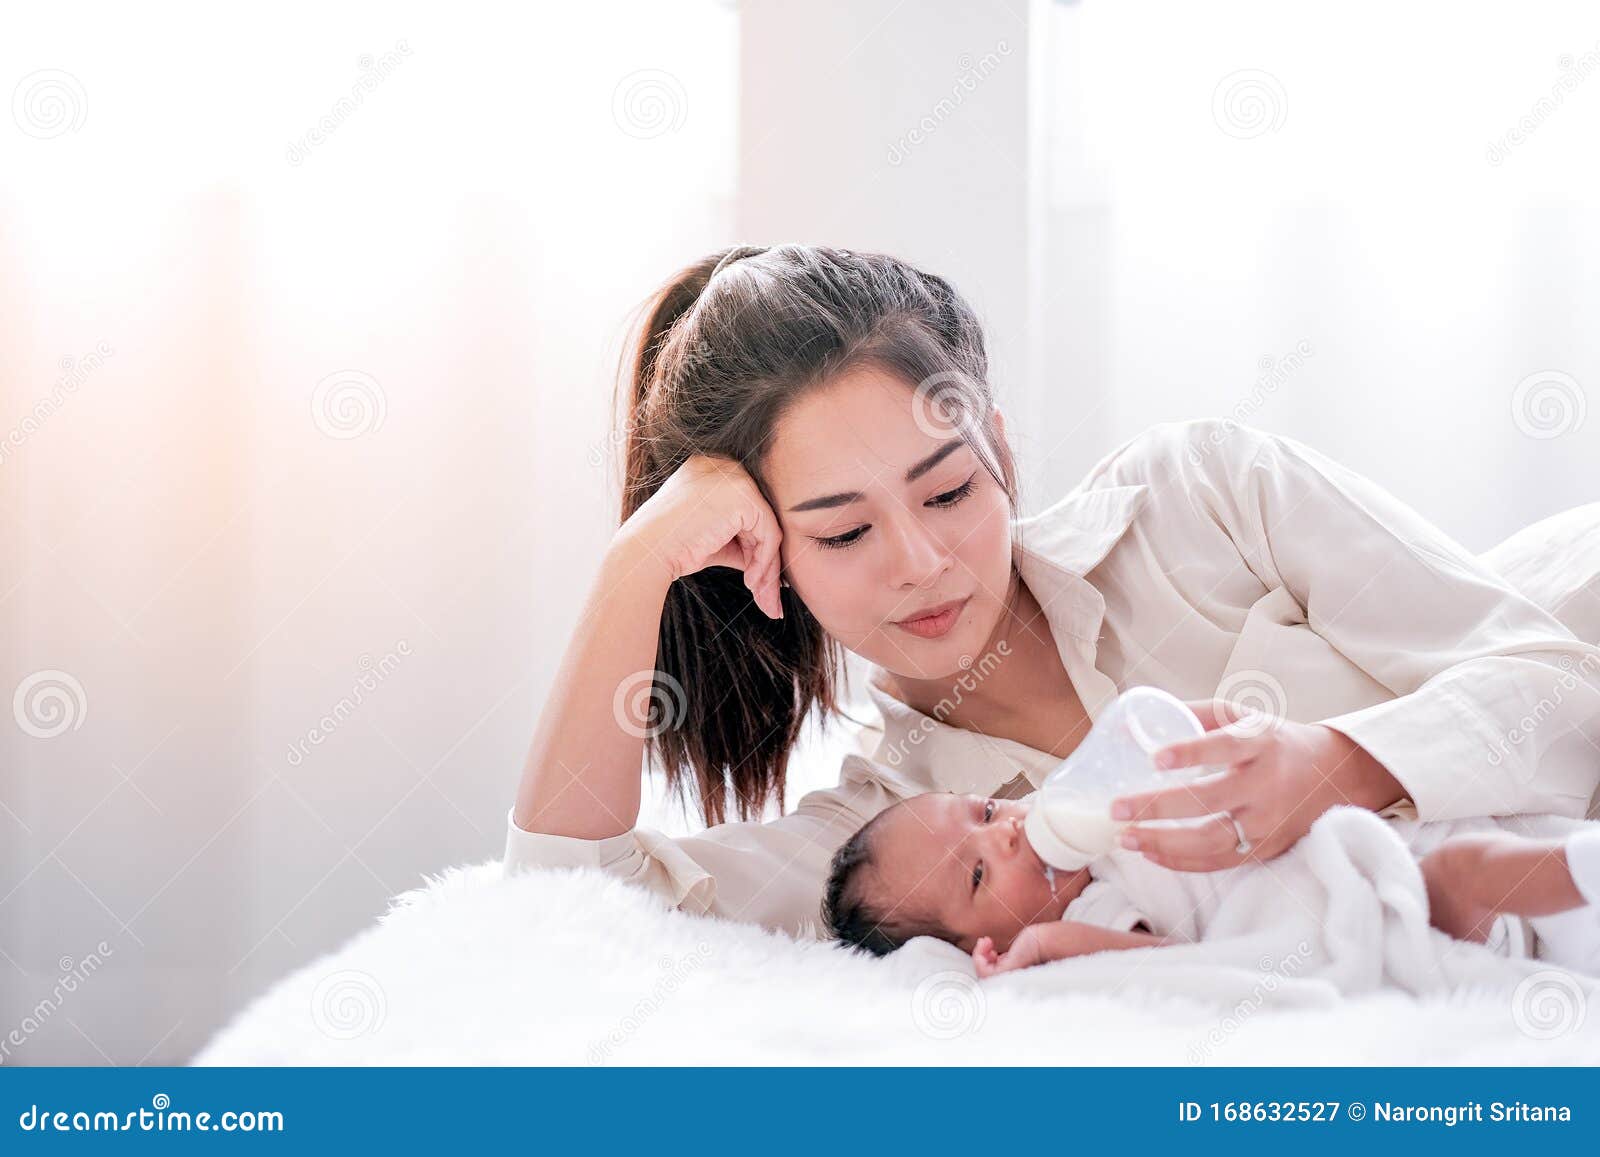 女人,婴儿,奶瓶,喂奶,医疗图片素材_高清图片素材